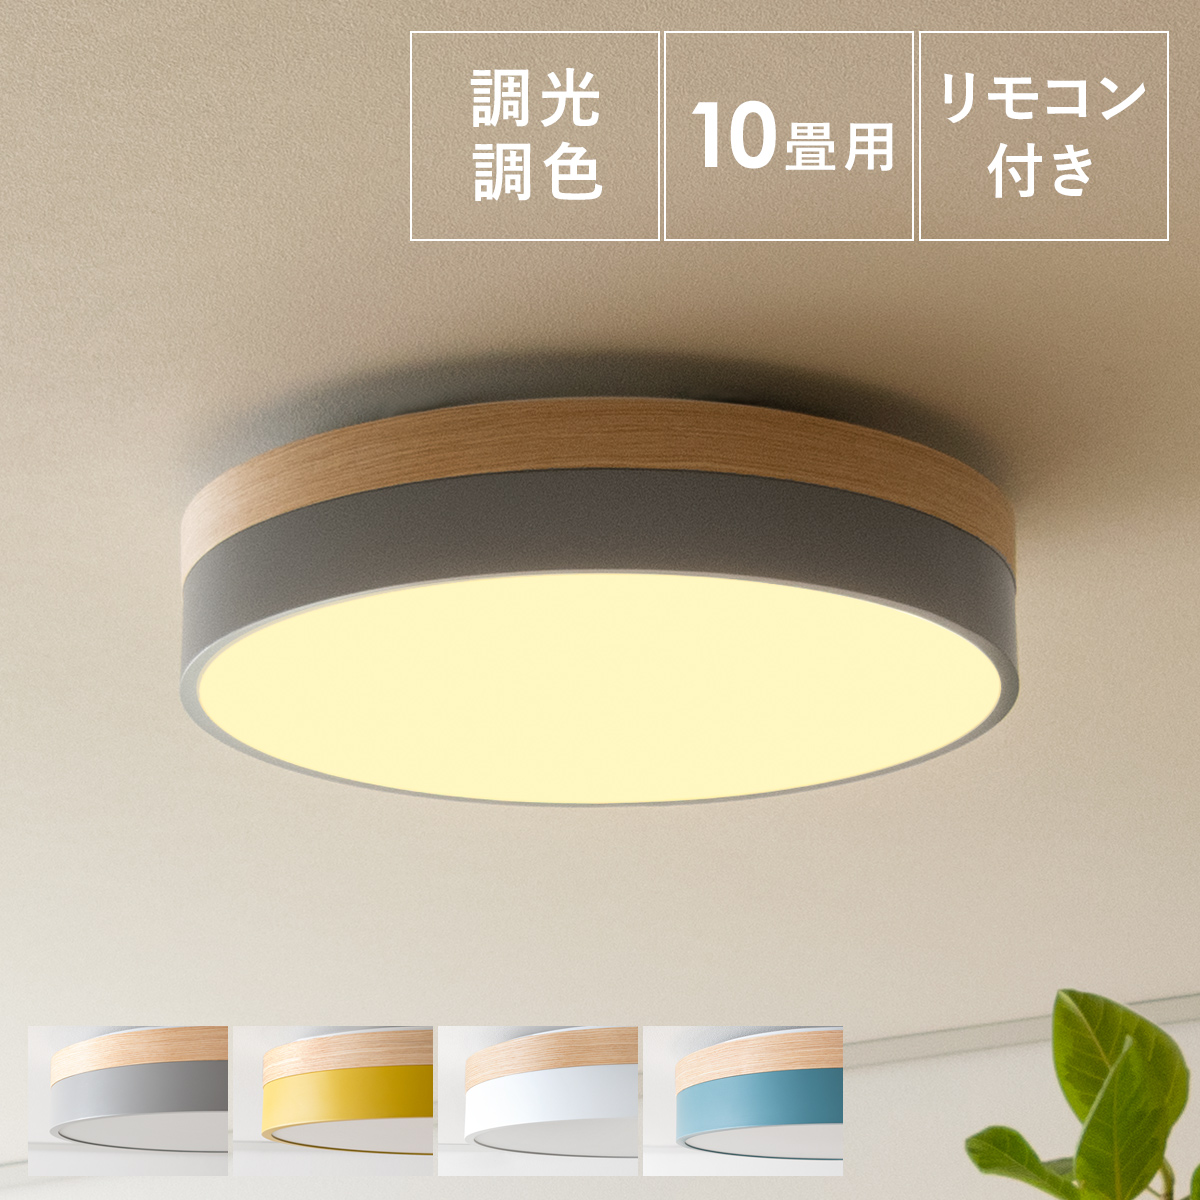 LEDシーリングライト OLIKA(オリカ) 【公式】 エア・リゾーム インテリア・家具通販